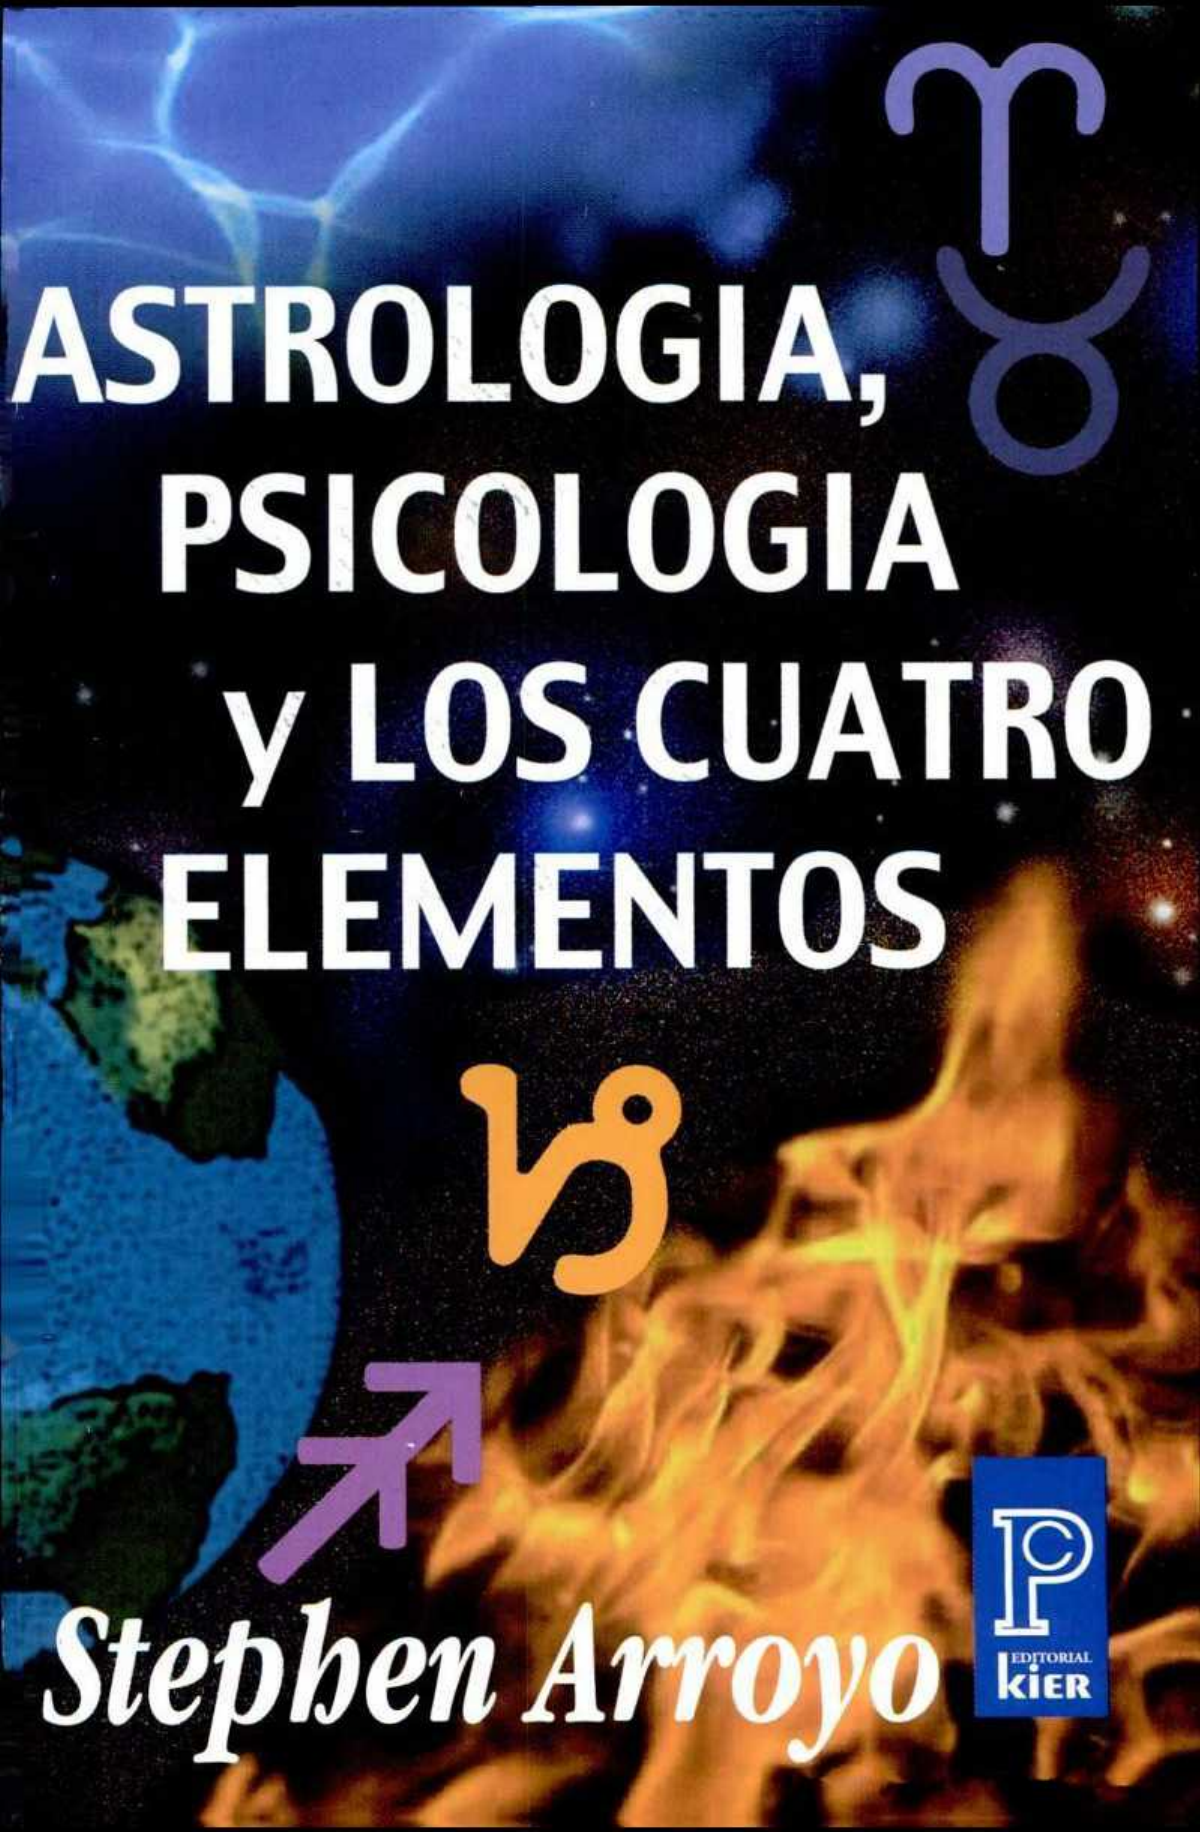 Astrologia Psicologia Y Los 4 Elementos Pdf